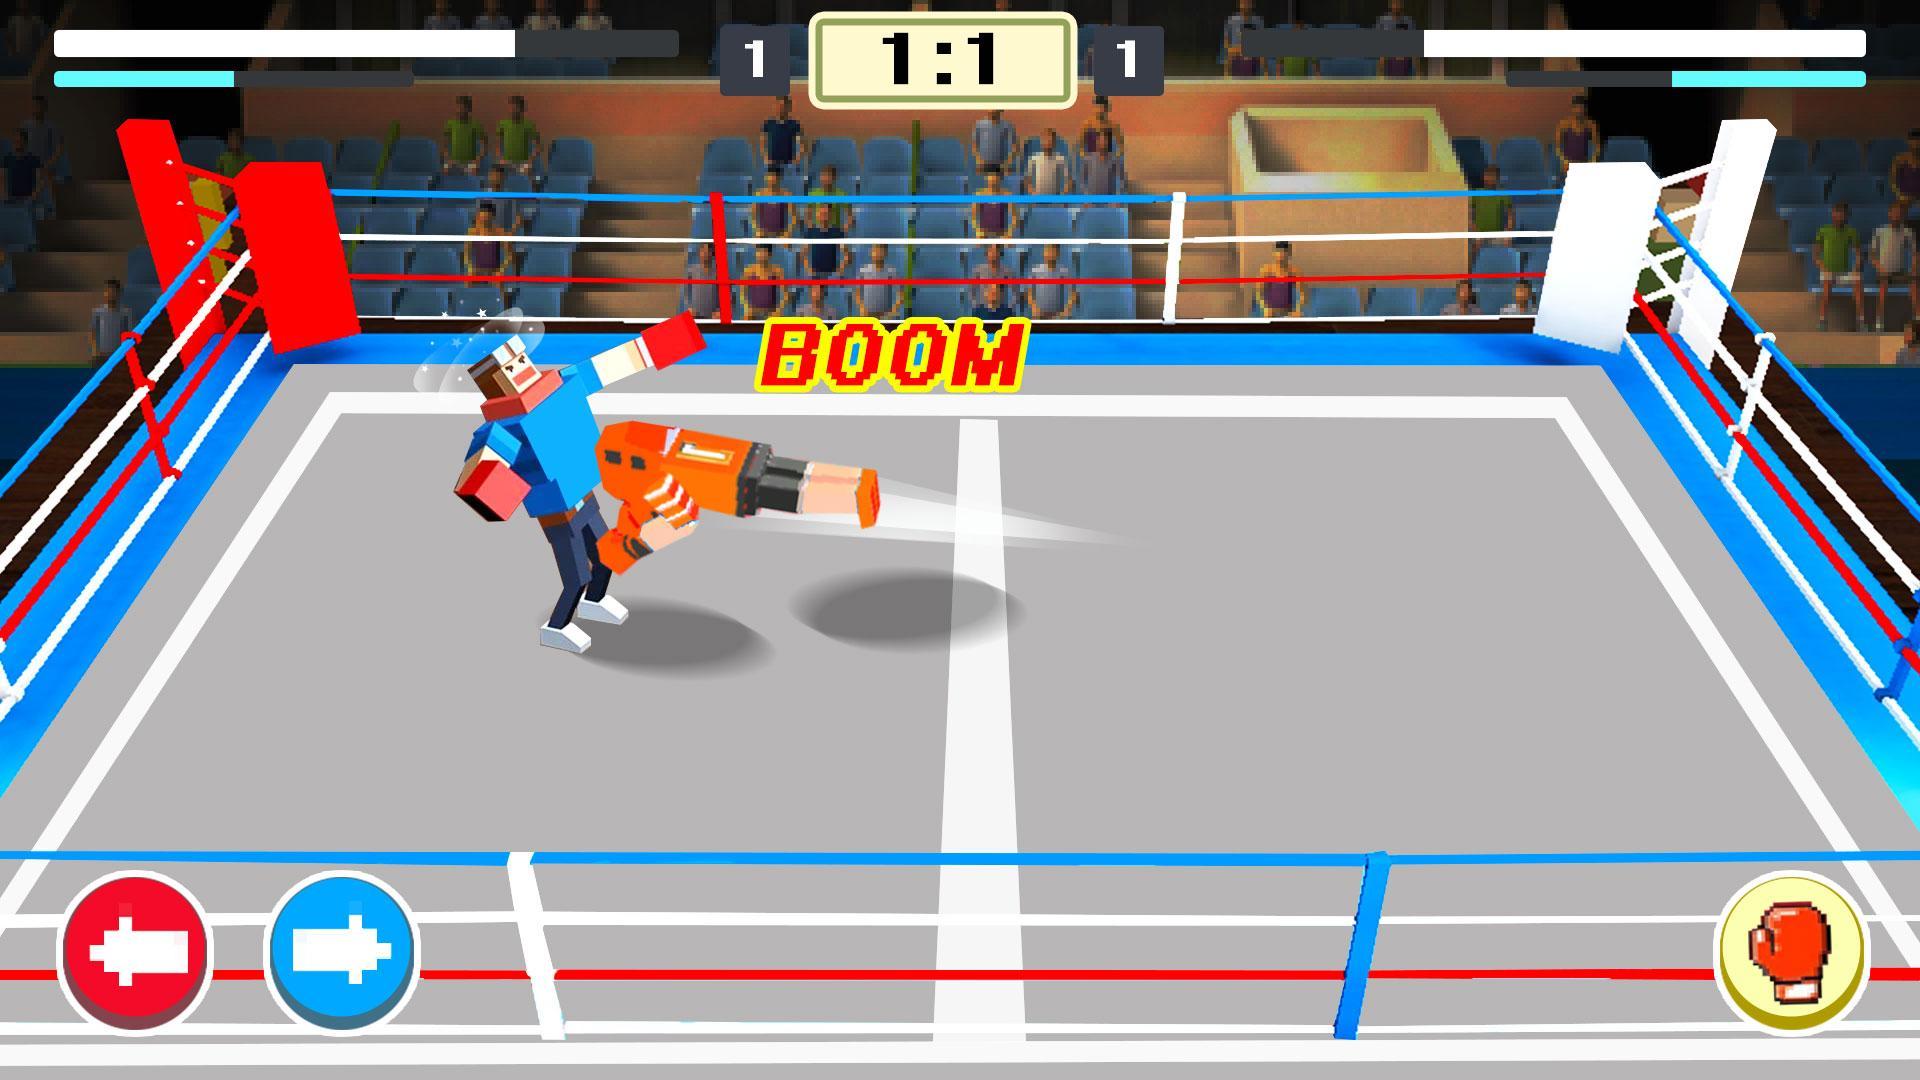 Screenshot 1 of Mine Boxing - Trò chơi chiến đấu thế giới vui nhộn thể thao 2019 1.0.1